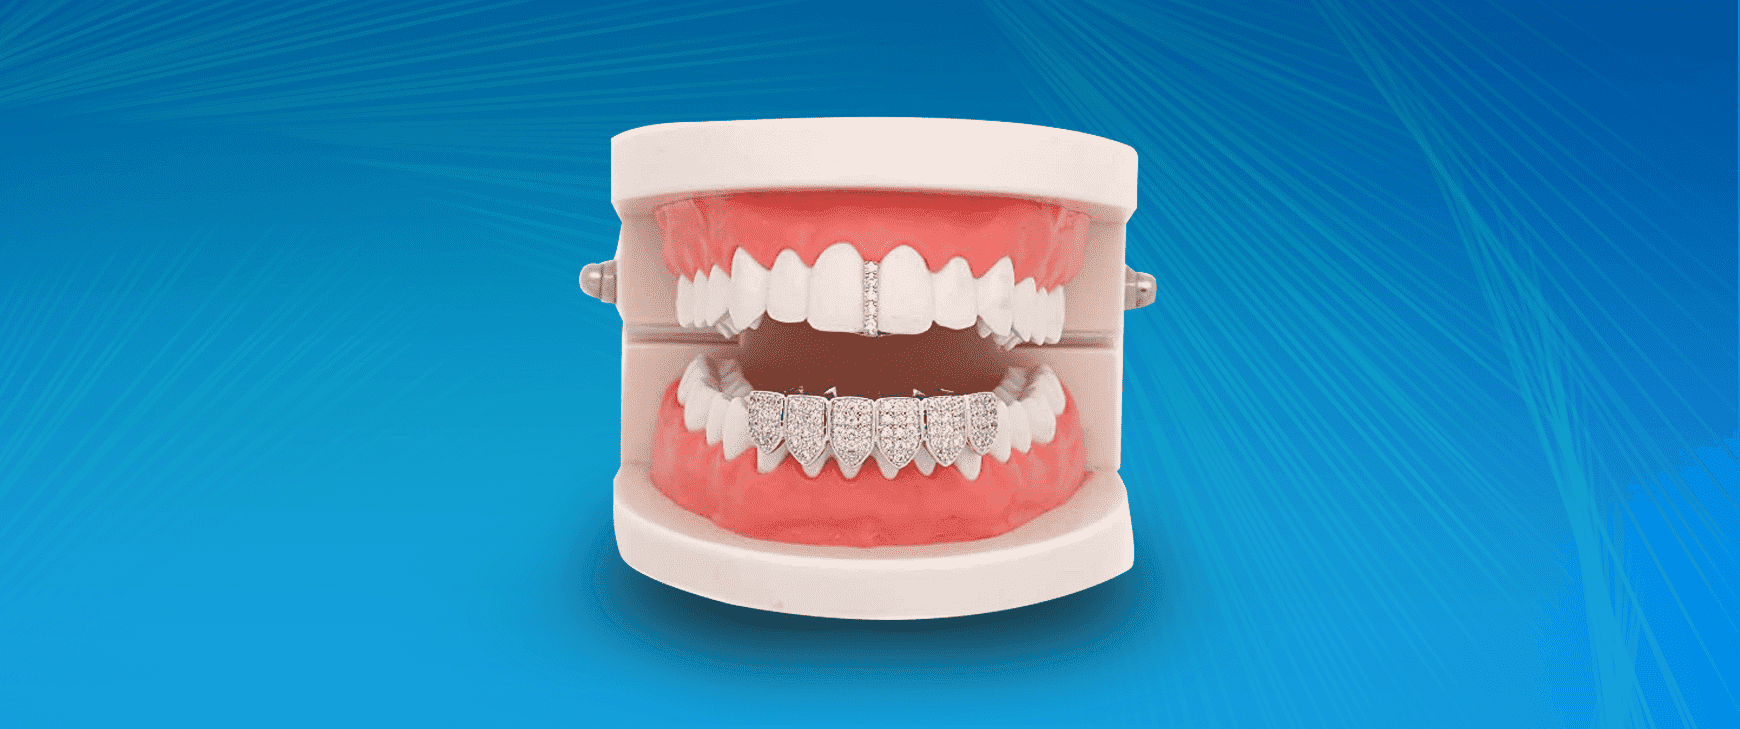 Son los Grillz y las Joyas Dentales seguros para tu salud bucodental?  Clínicas IGB Dental – IGB Dental